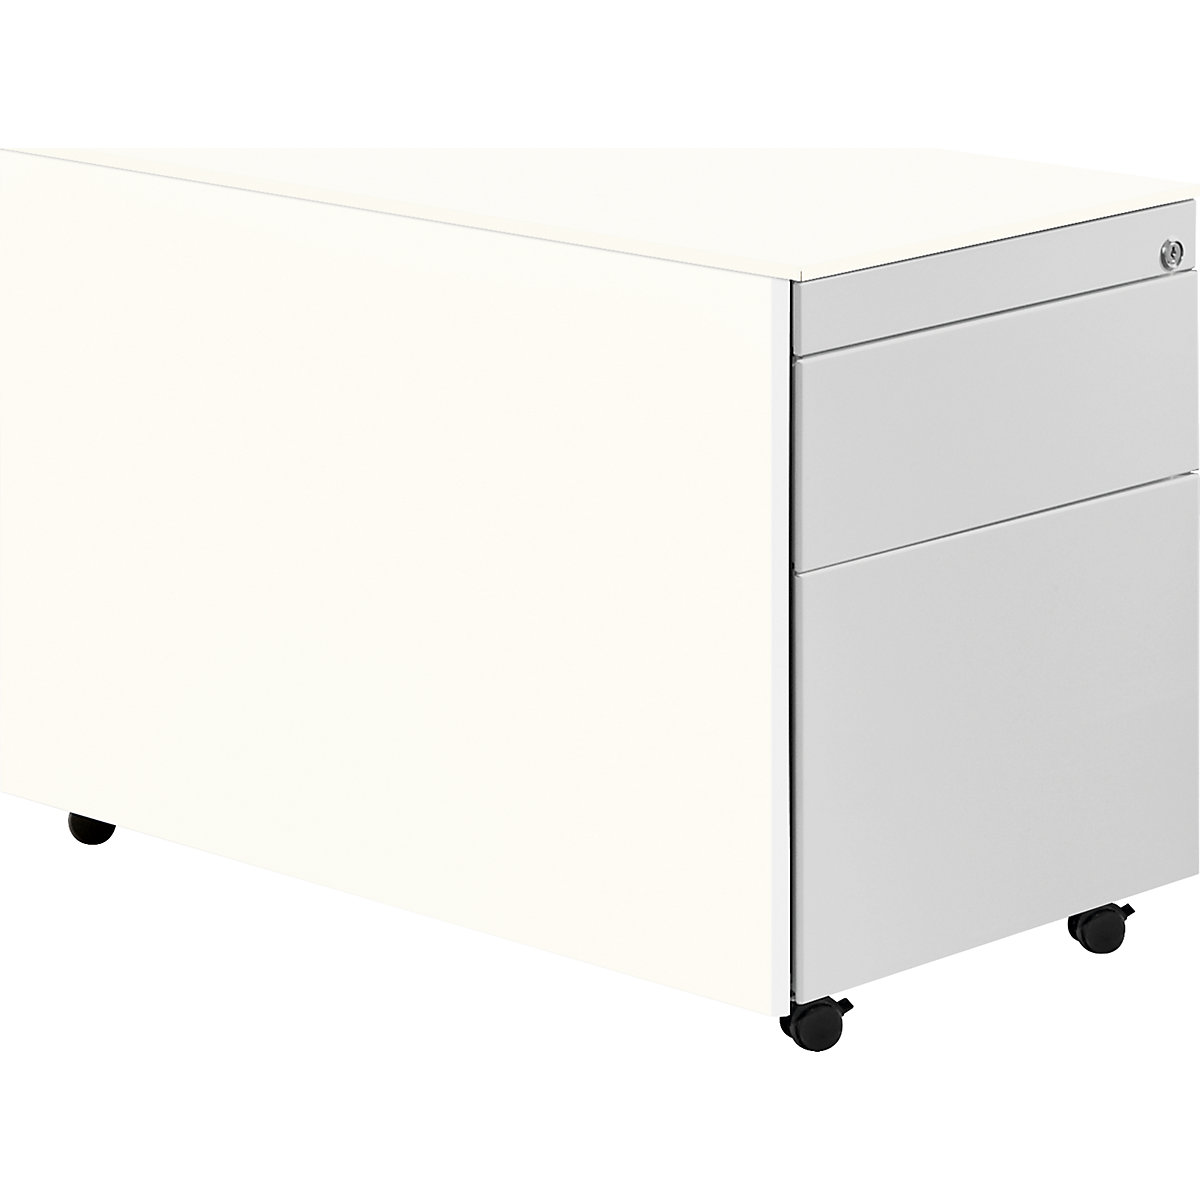 Casetieră cu sertare cu role – mauser, î. x ad. 570 x 800 mm, 1 sertar pentru materiale, 1 registratură suspendată, alb pur / alb aluminiu / alb